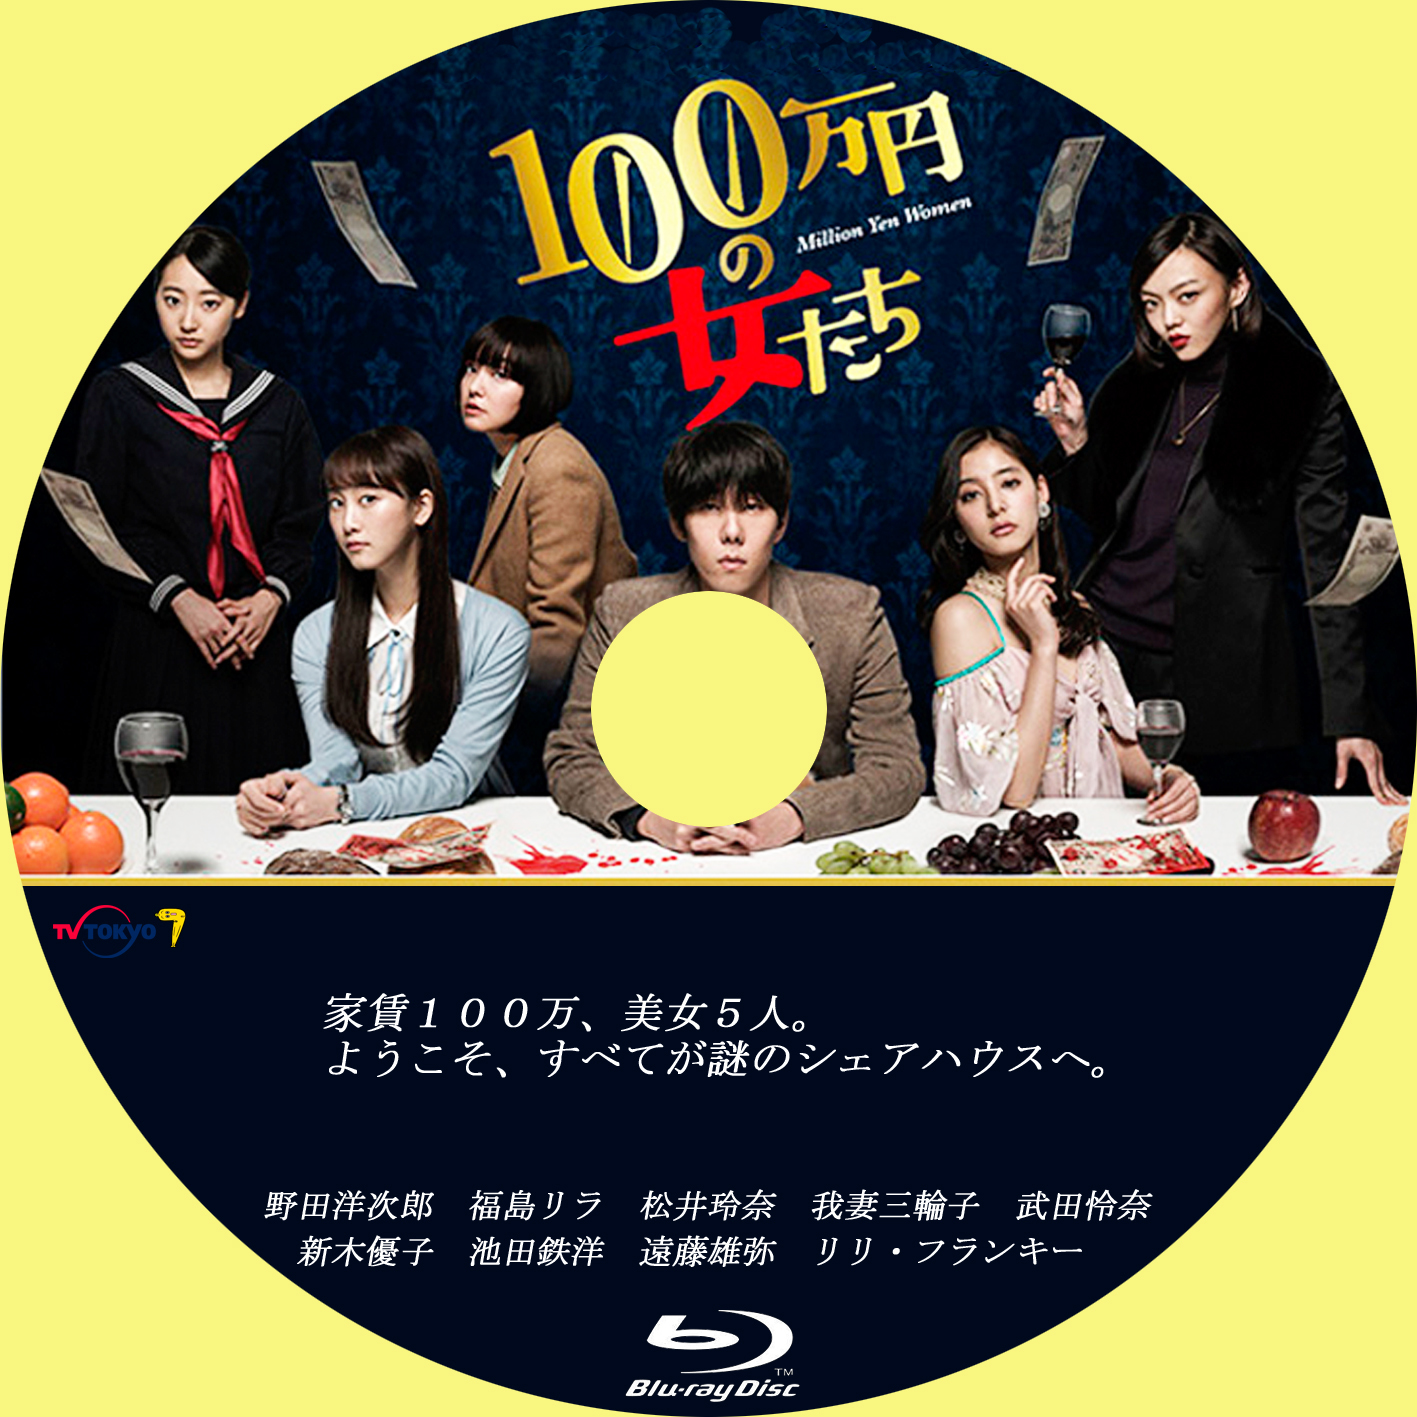 100万円の女たち」 DVD BOX 野田洋次郎 - DVD/ブルーレイ